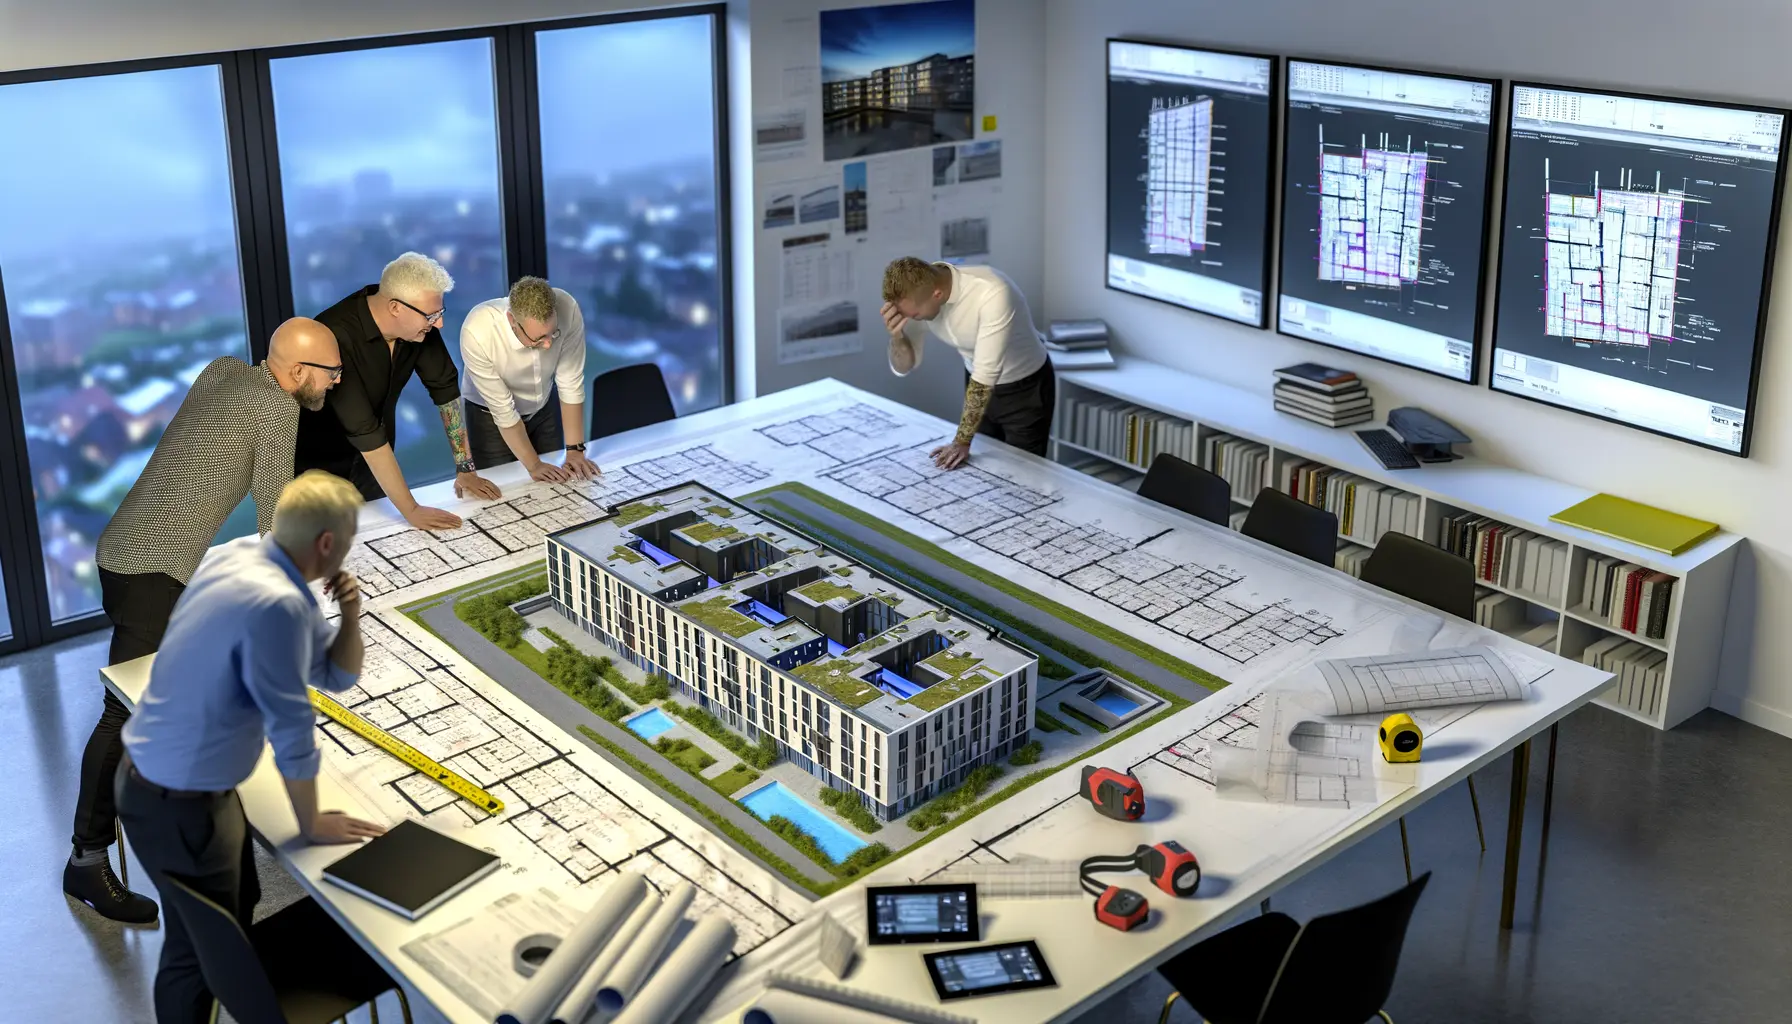 Hyperrealistische Darstellung eines Architektenbüros während der Planungsphase